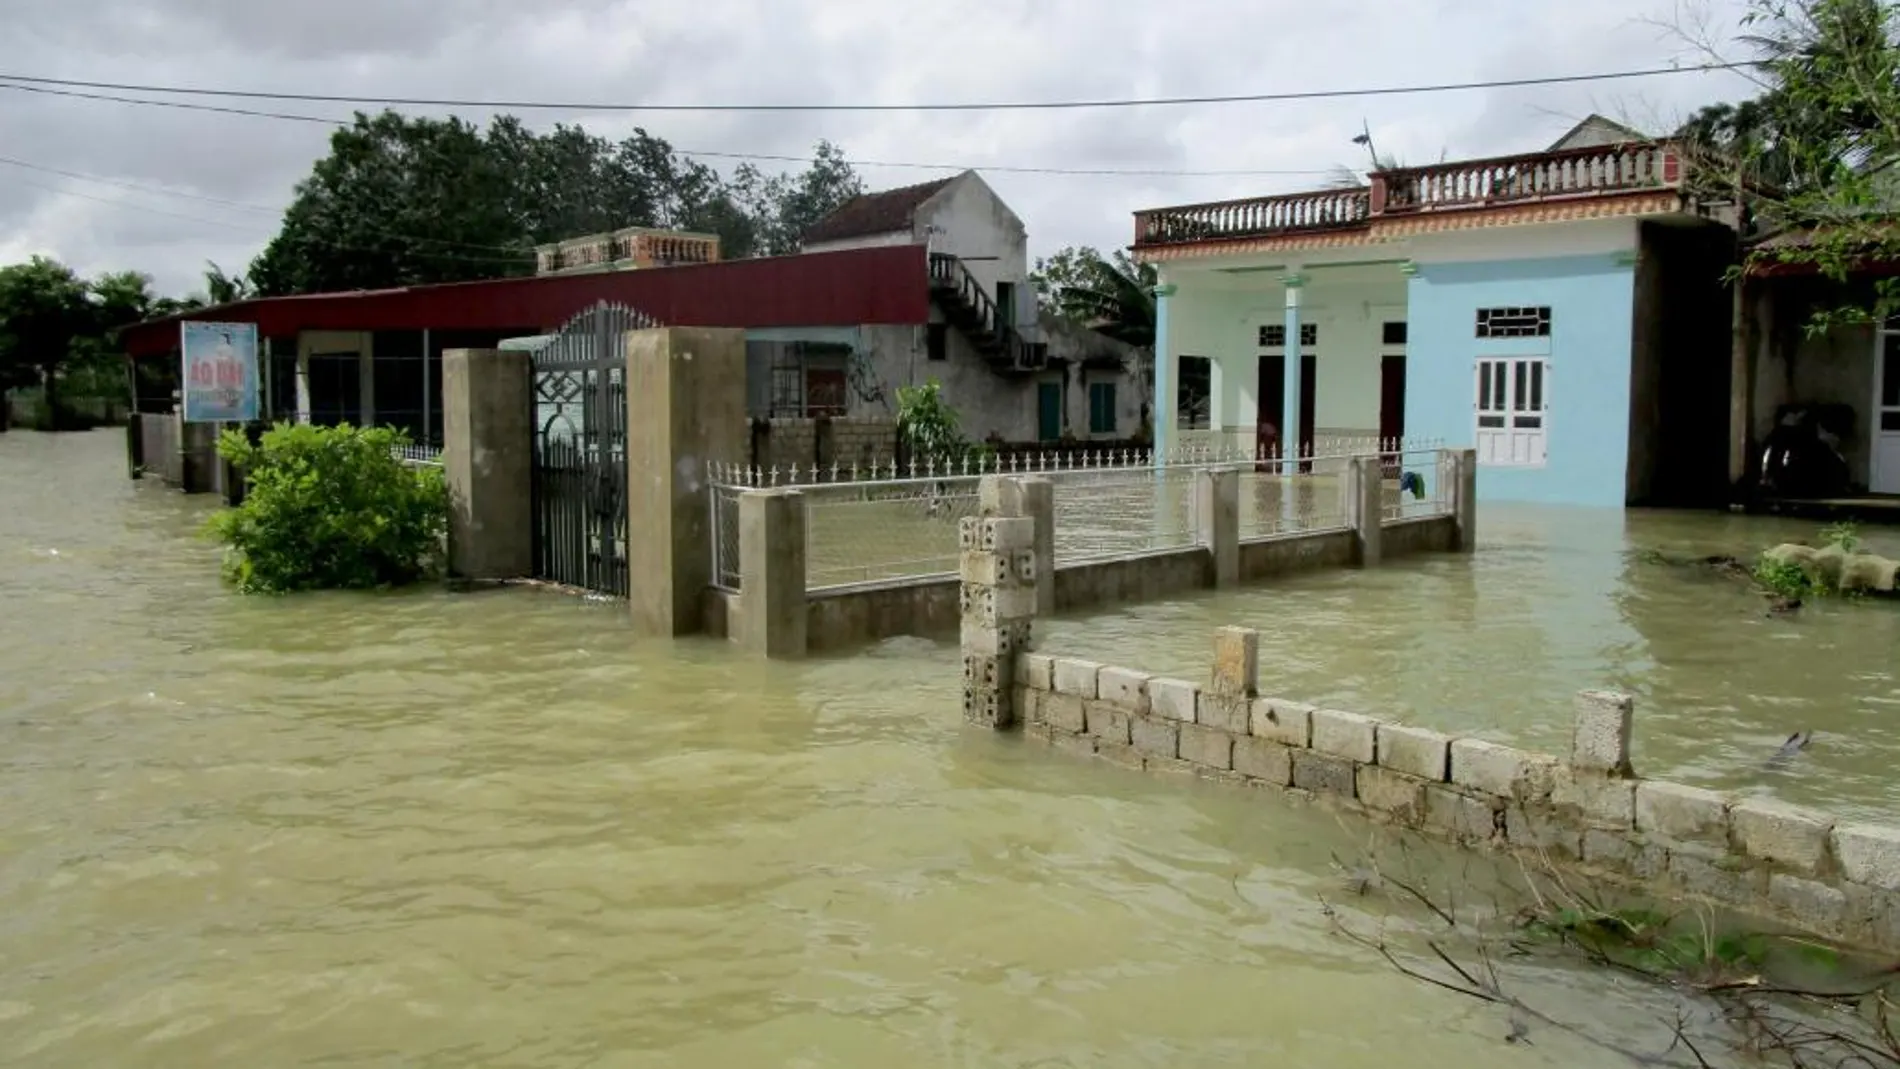 Viviendas afectadas por crecientes repentinas e inundaciones en Thanh Hoa (Vietnam)